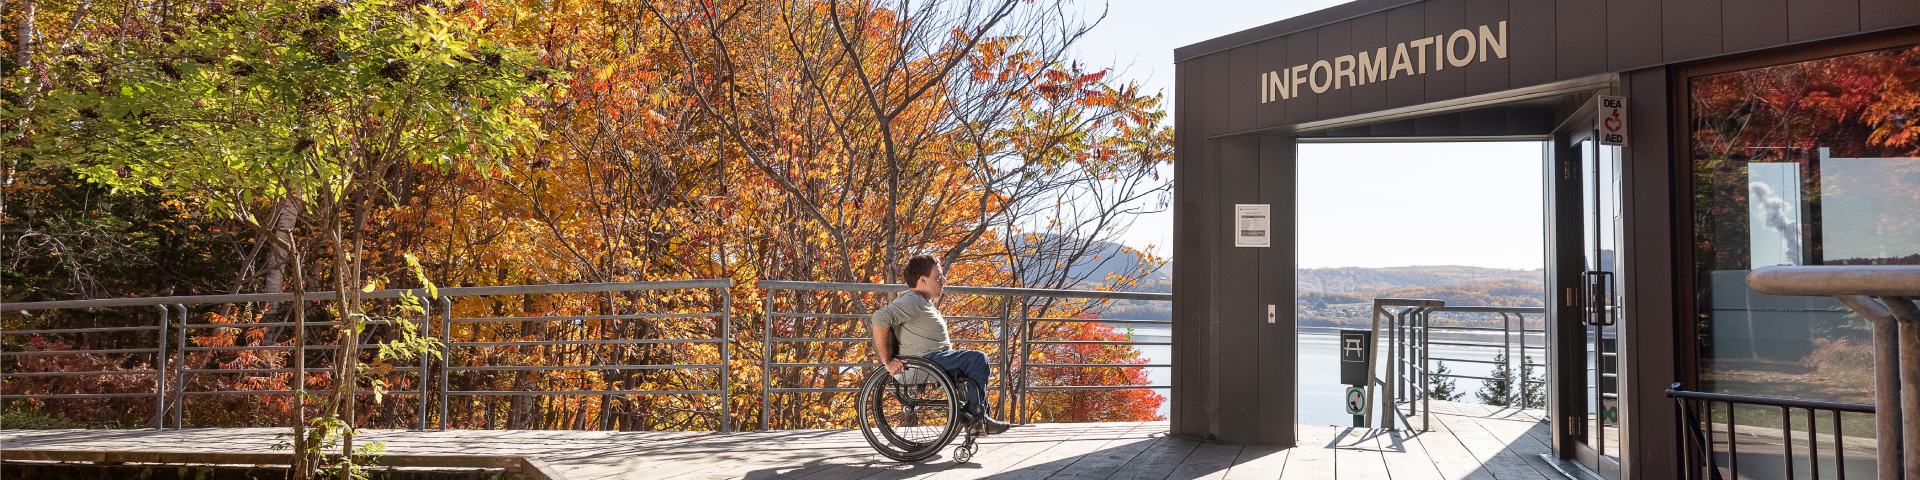 Une personne en fauteuil roulant sur un trottoir de bois s'apprête à entrer dans un musée. 